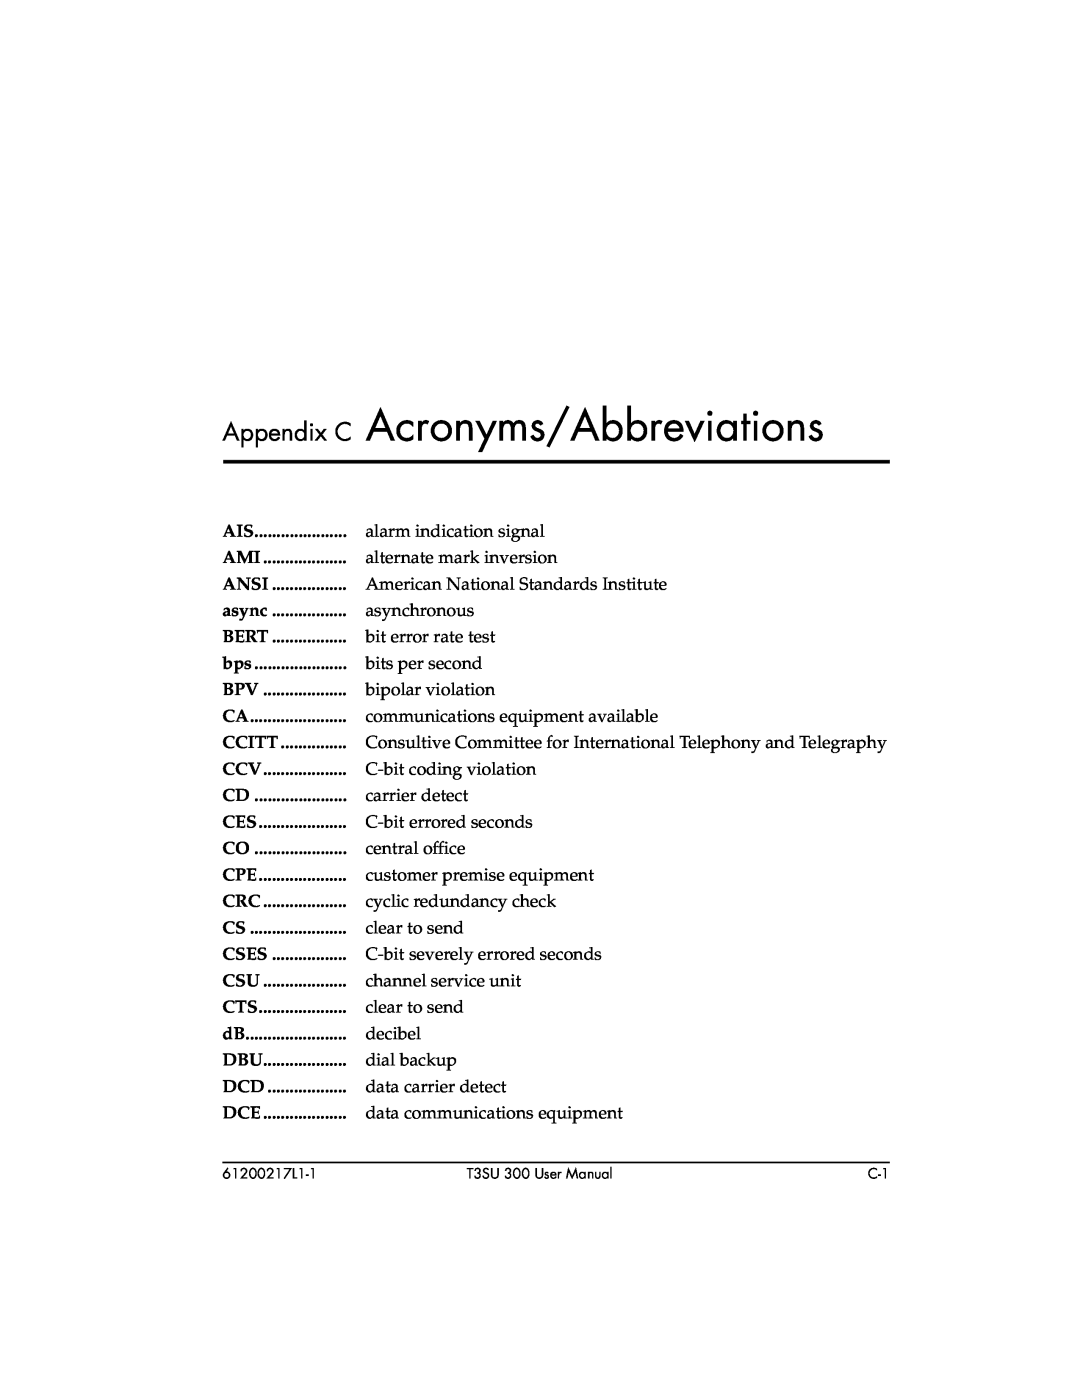 ADTRAN T3SU 300 user manual Appendix C Acronyms/Abbreviations, Ansi, async, Bert, Ccitt, Cses 